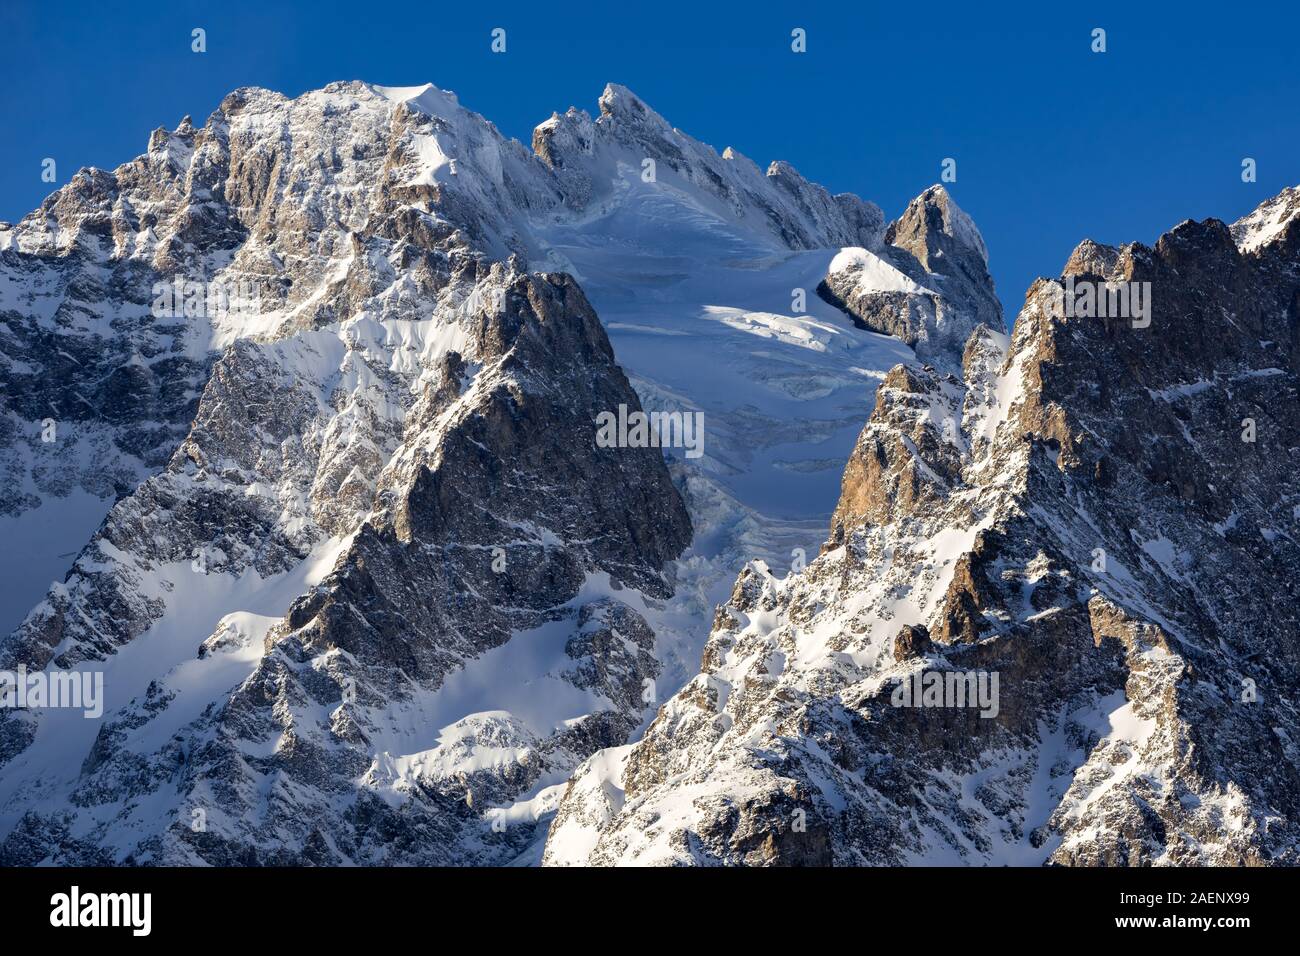 Glacier de l'Homme im Winter mit dem Gipfel von La Meije. Nationalpark Ecrins, Col du Lautaret, Alpes-de-Haute-Provence, Alpen, Frankreich Stockfoto